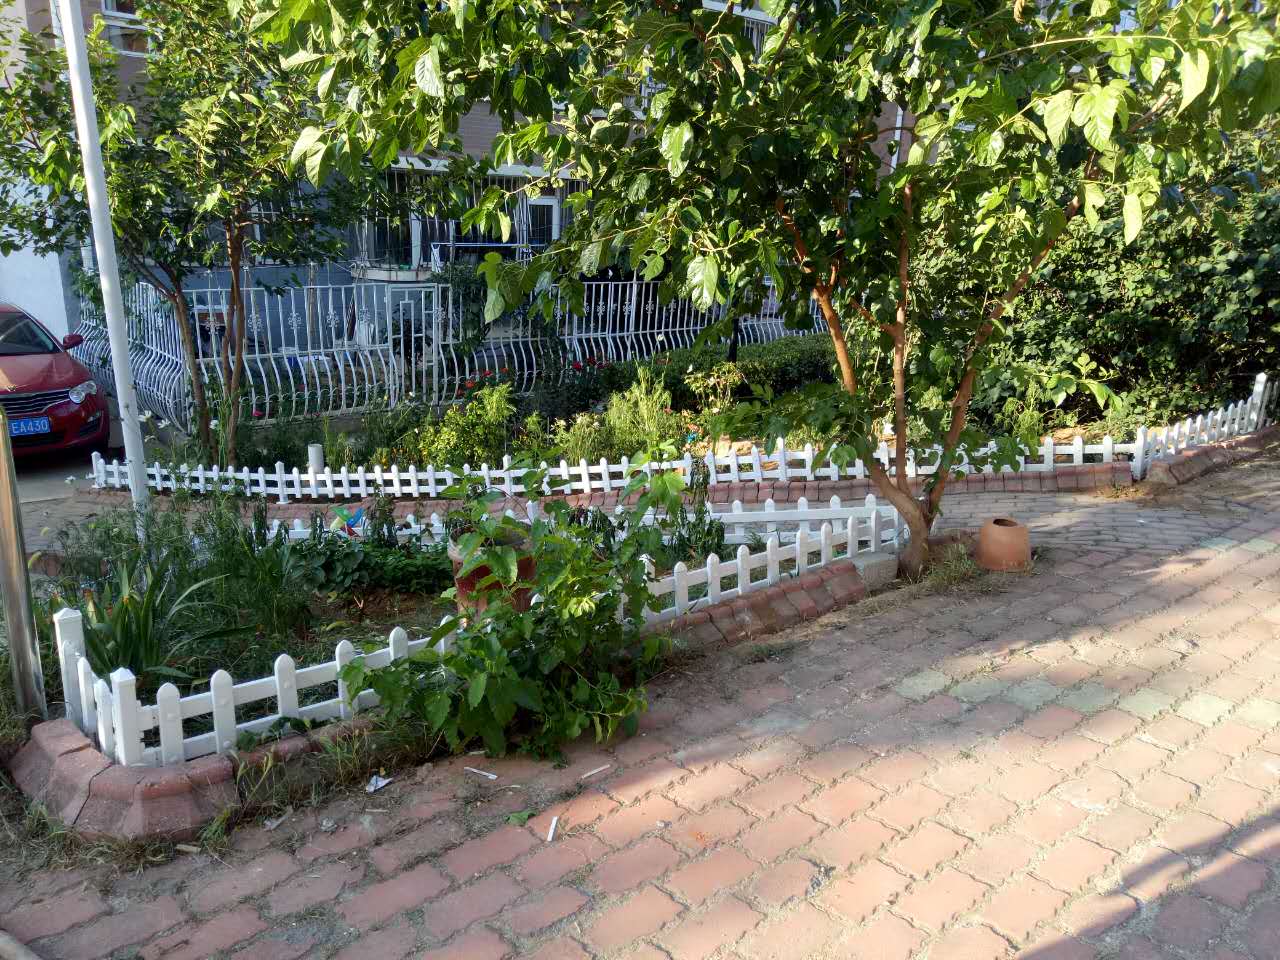 庭院护栏